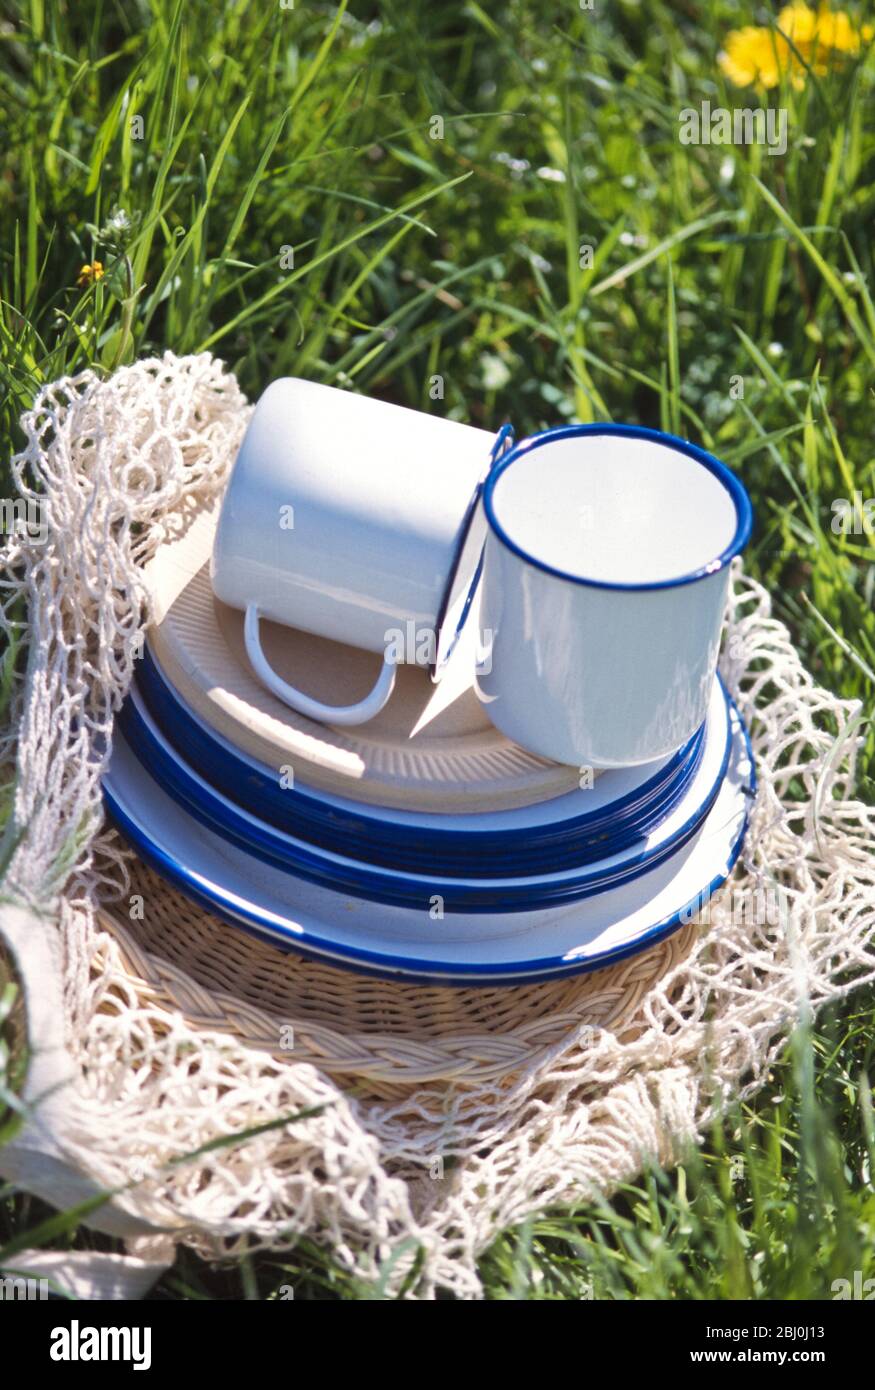 Emaille- und Pappbecher und Untertassen auf einer Saite auf dem Gras aufgehäuft - Teil eines Frühjahrspicknicks - Stockfoto